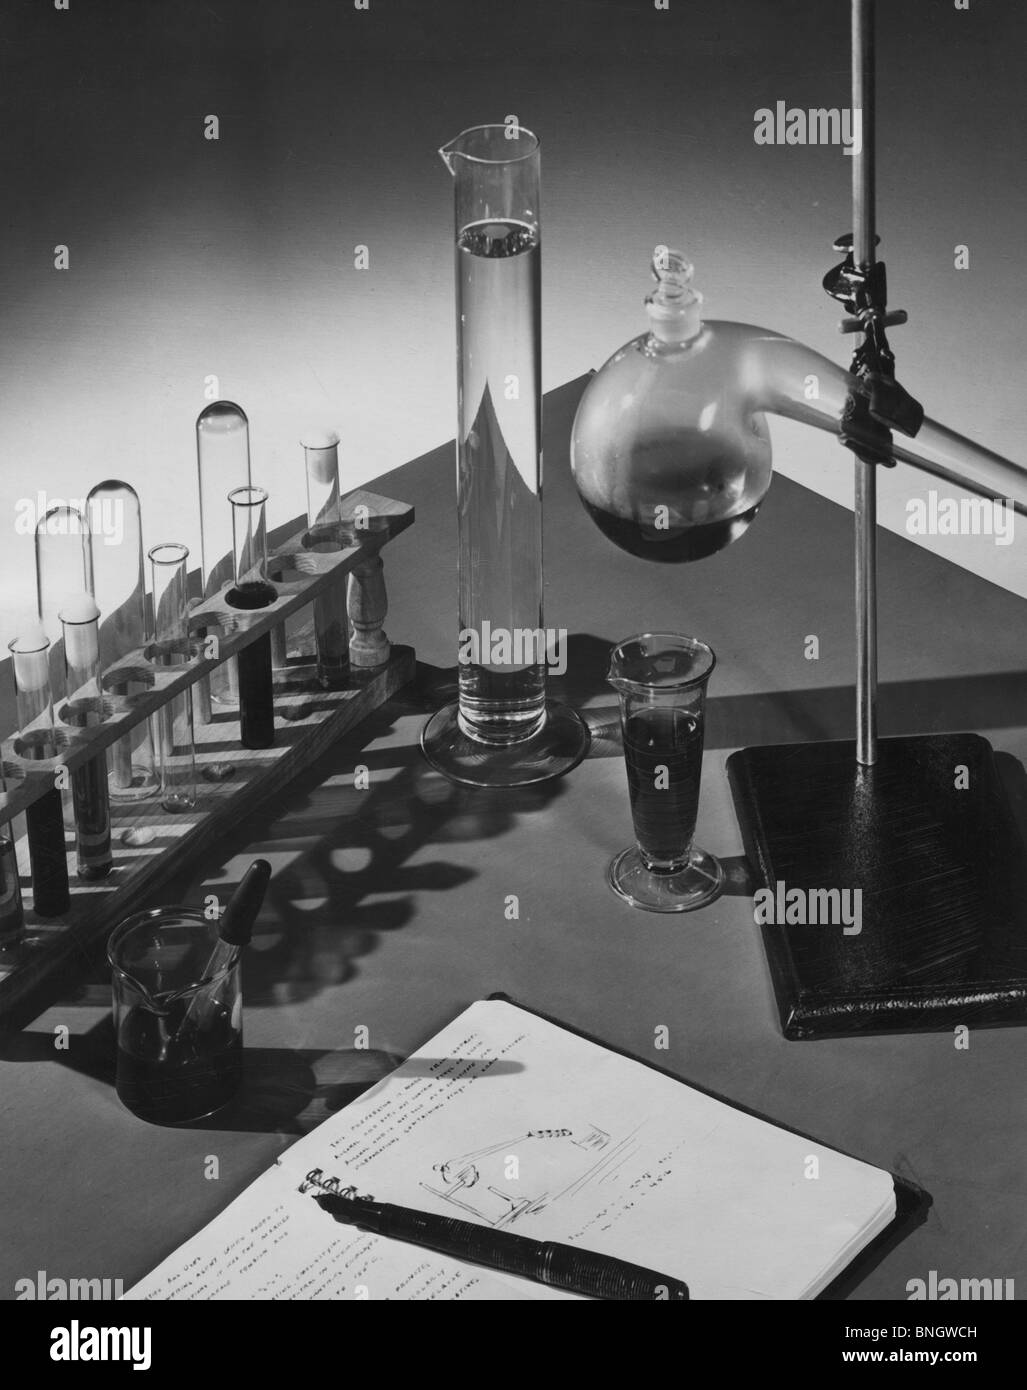 Laboratory equipment, 1950s Stock Photo